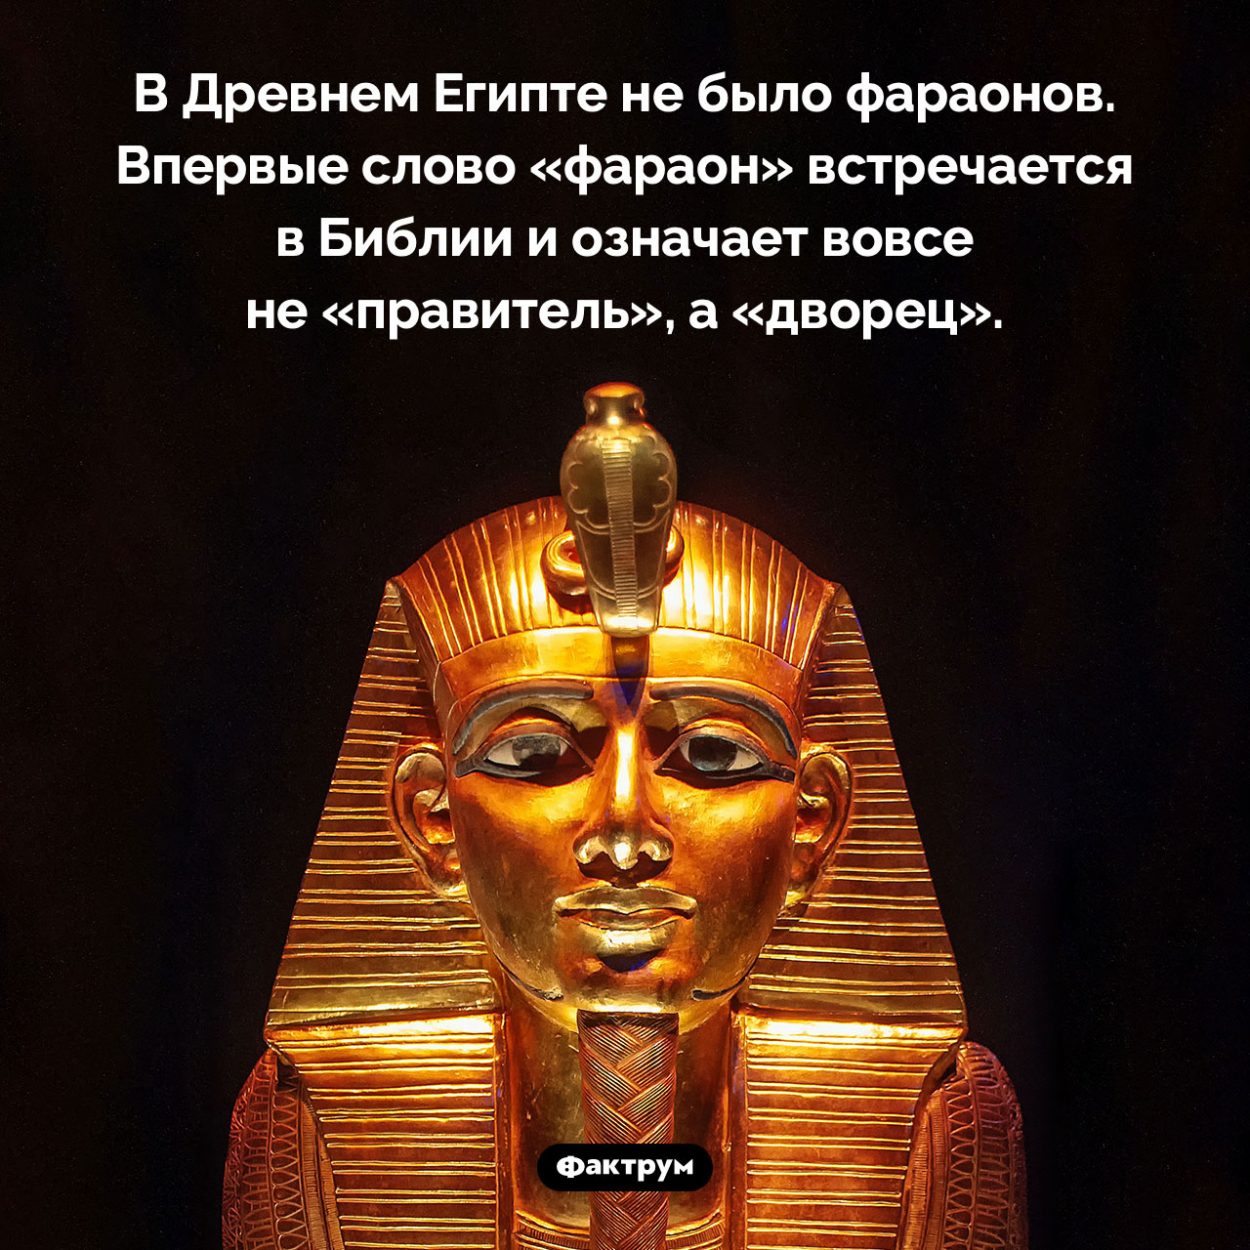 В Древнем Египте не было фараонов. В Древнем Египте не было фараонов. Впервые слово «фараон» встречается в Библии и означает вовсе не «правитель», а «дворец».